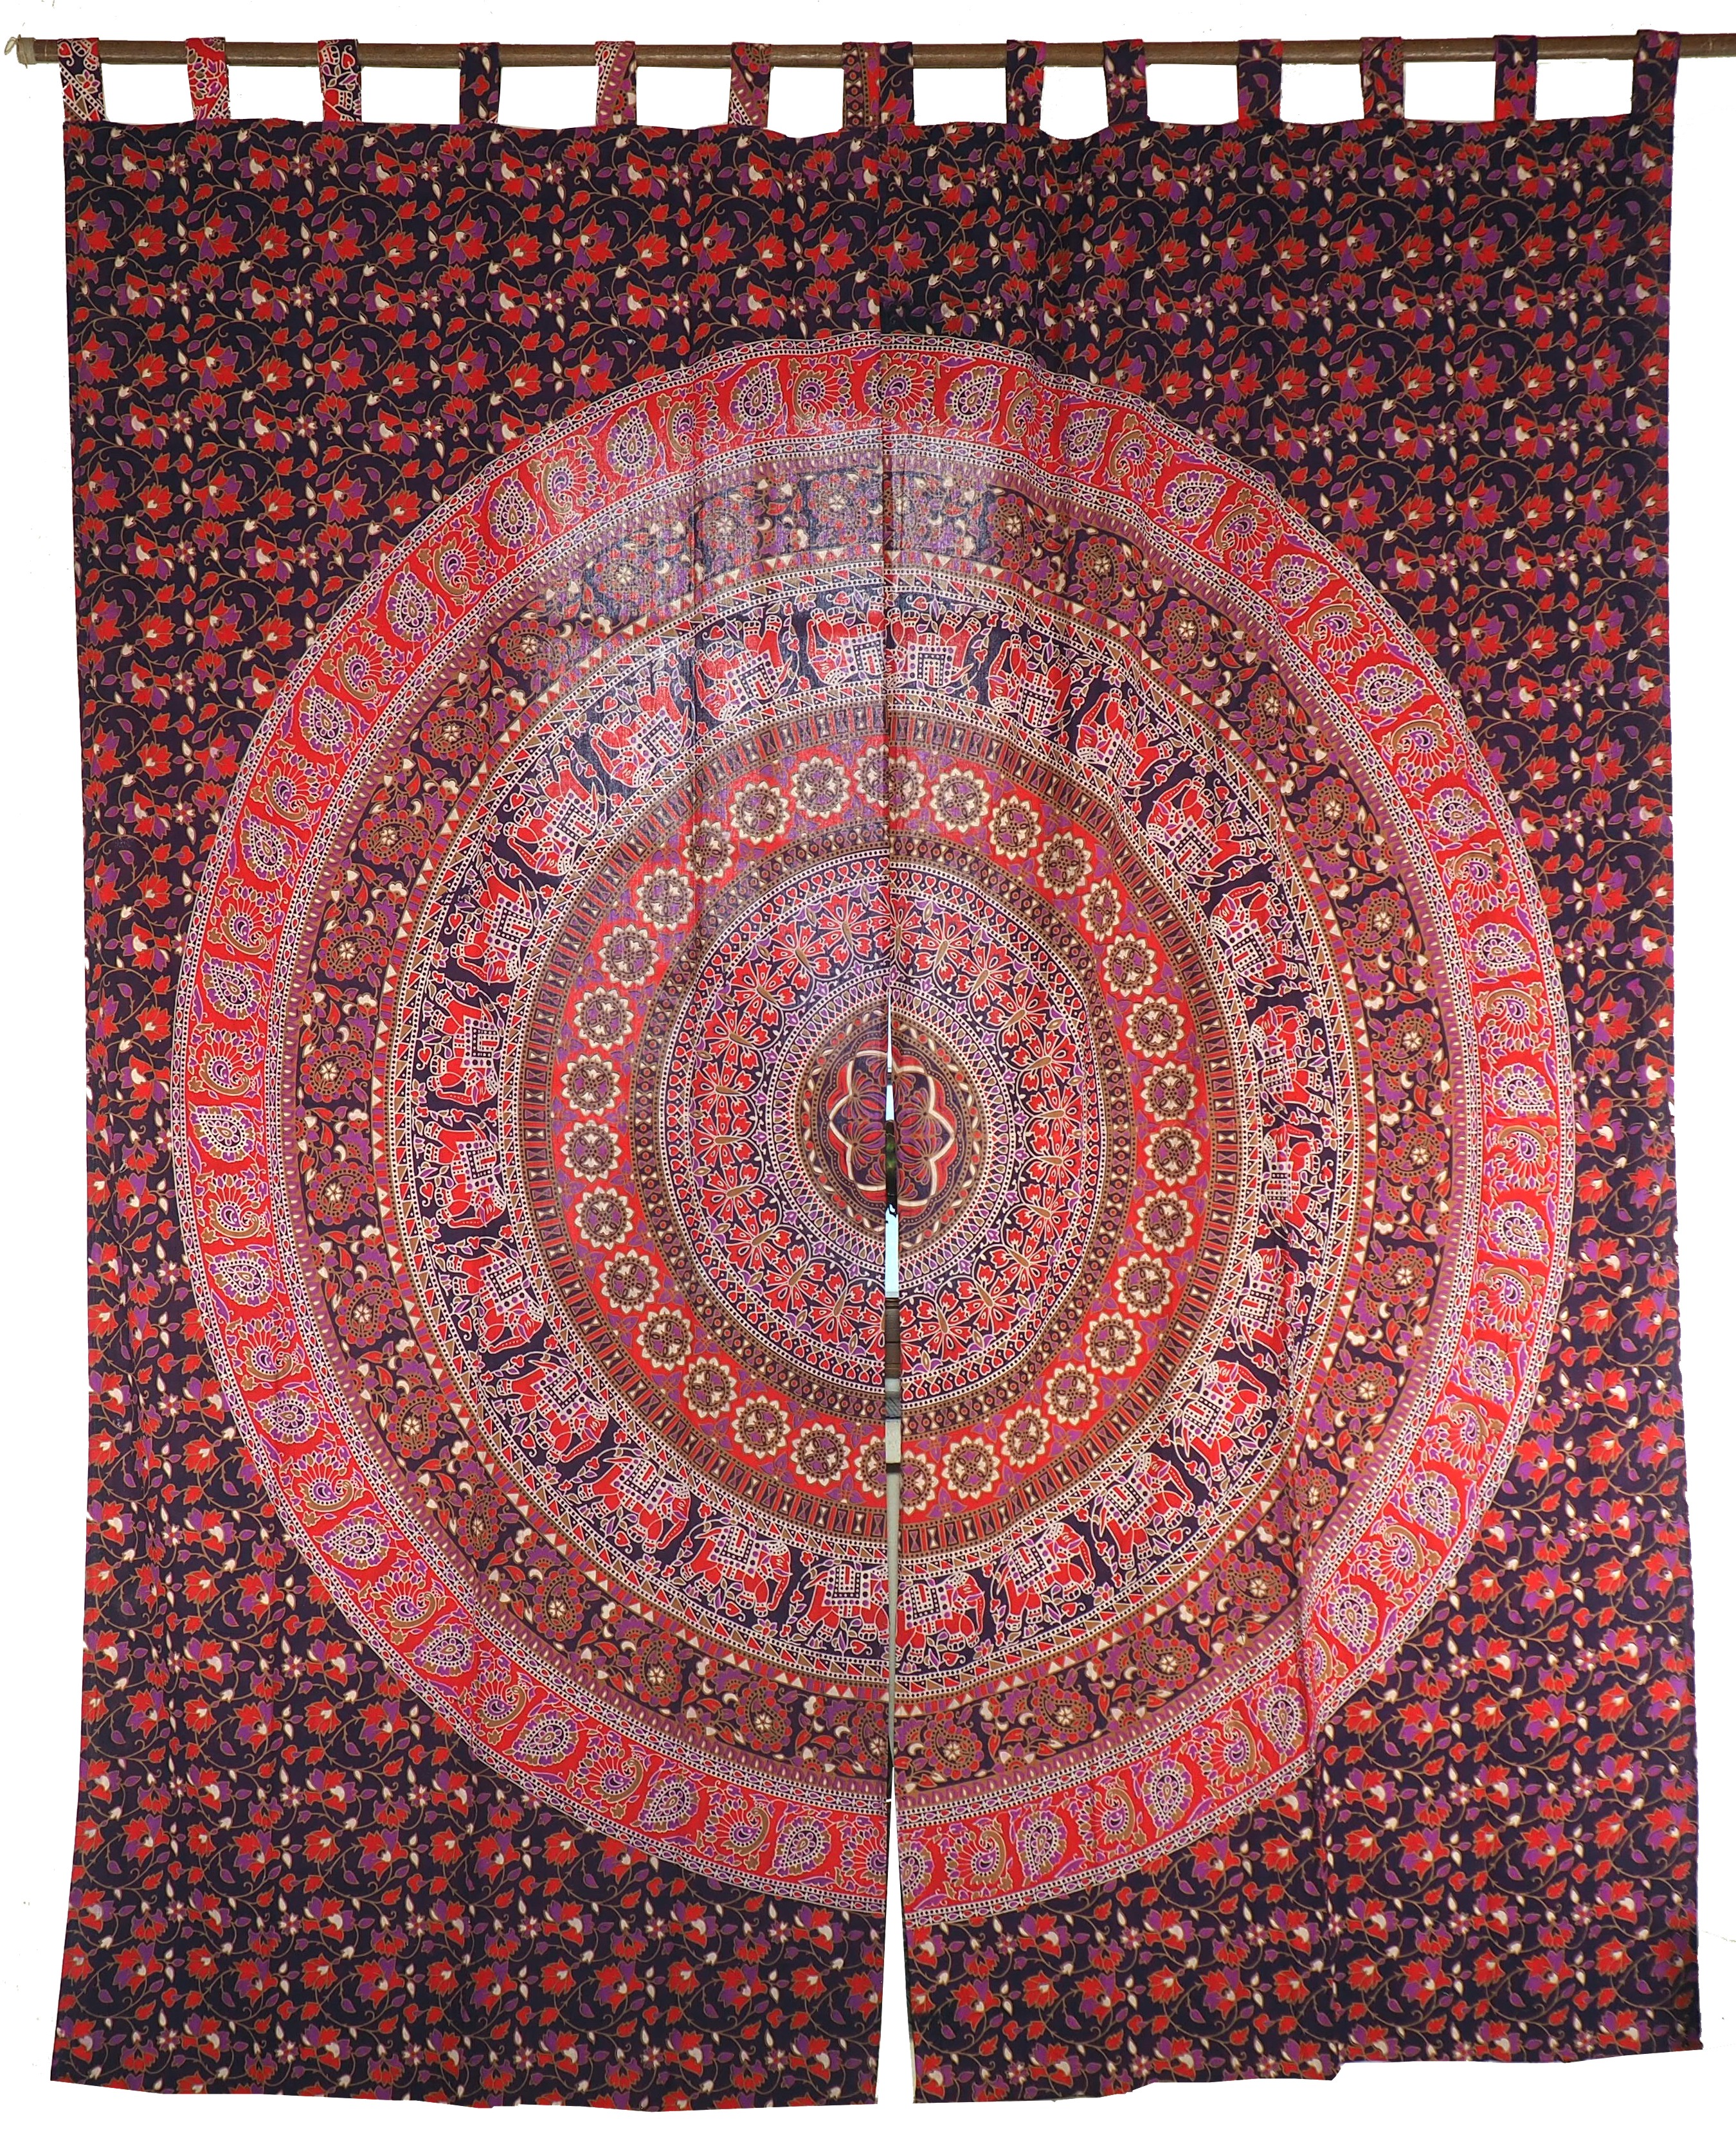 Vorhang-Gardine 1 Paar Vorhänge Motiv lila-rot Schlaufen Gardinen mit Mandala